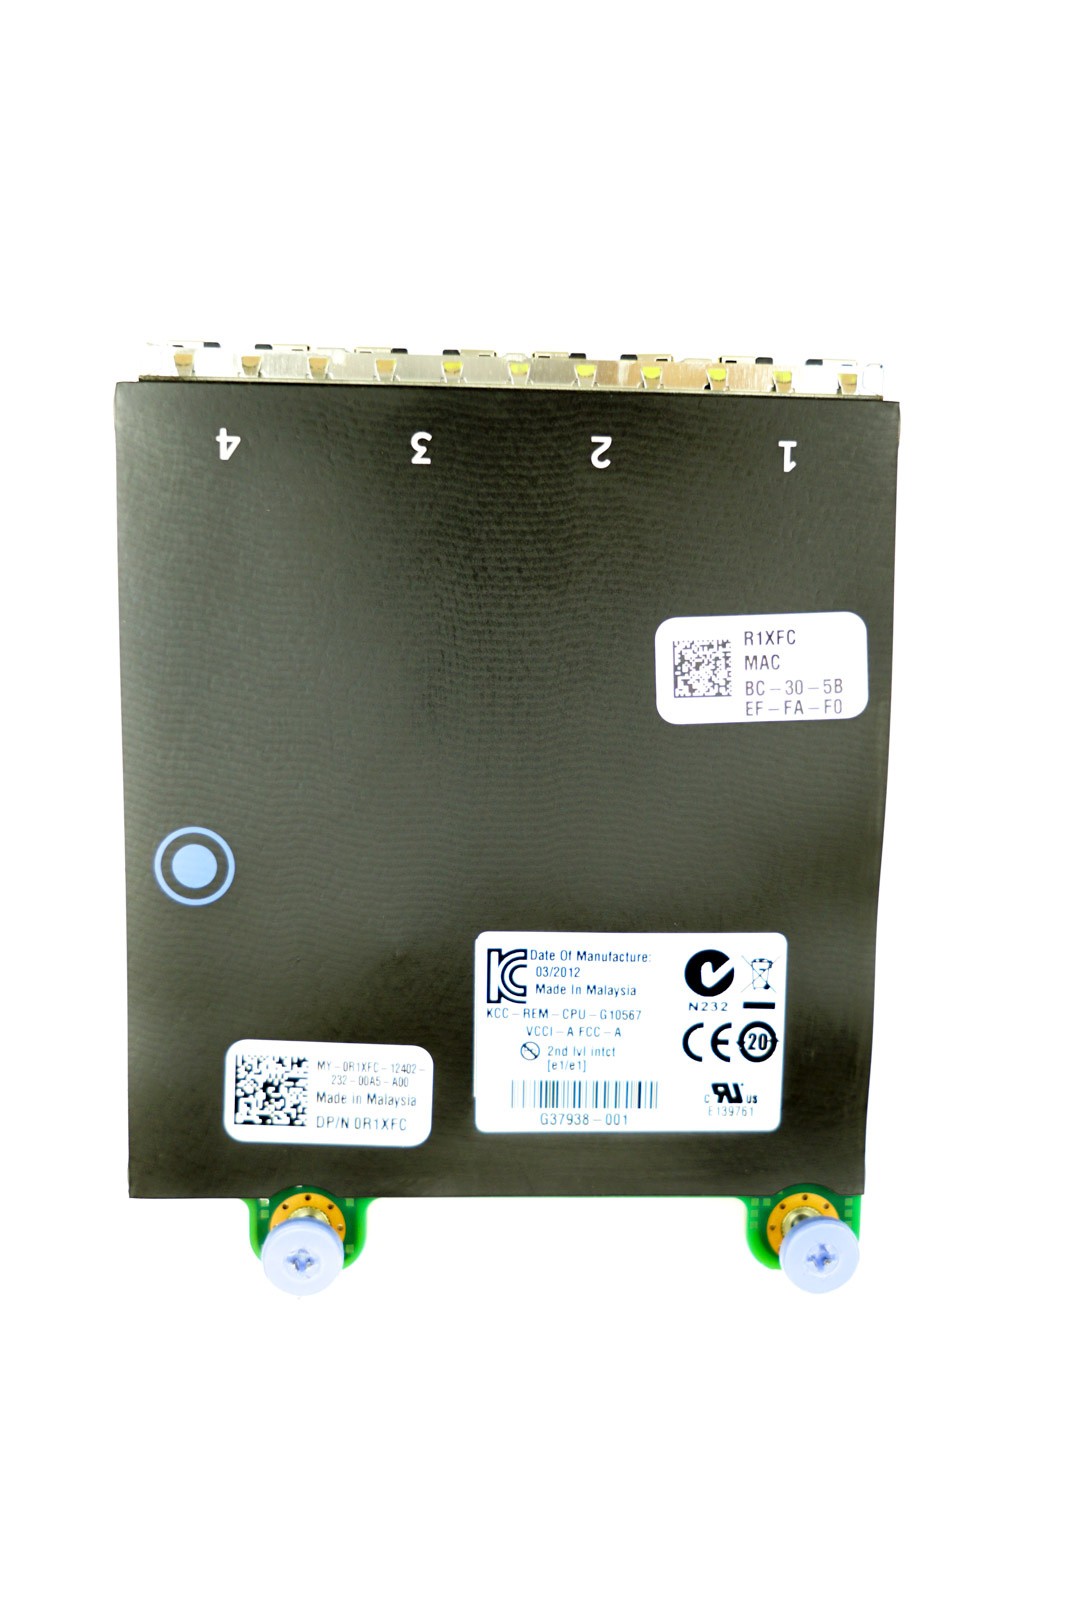 Dell (R1XFC) I350 Quad Port - 1GbE RJ45 rNDC (0R1XFC) Ethernet